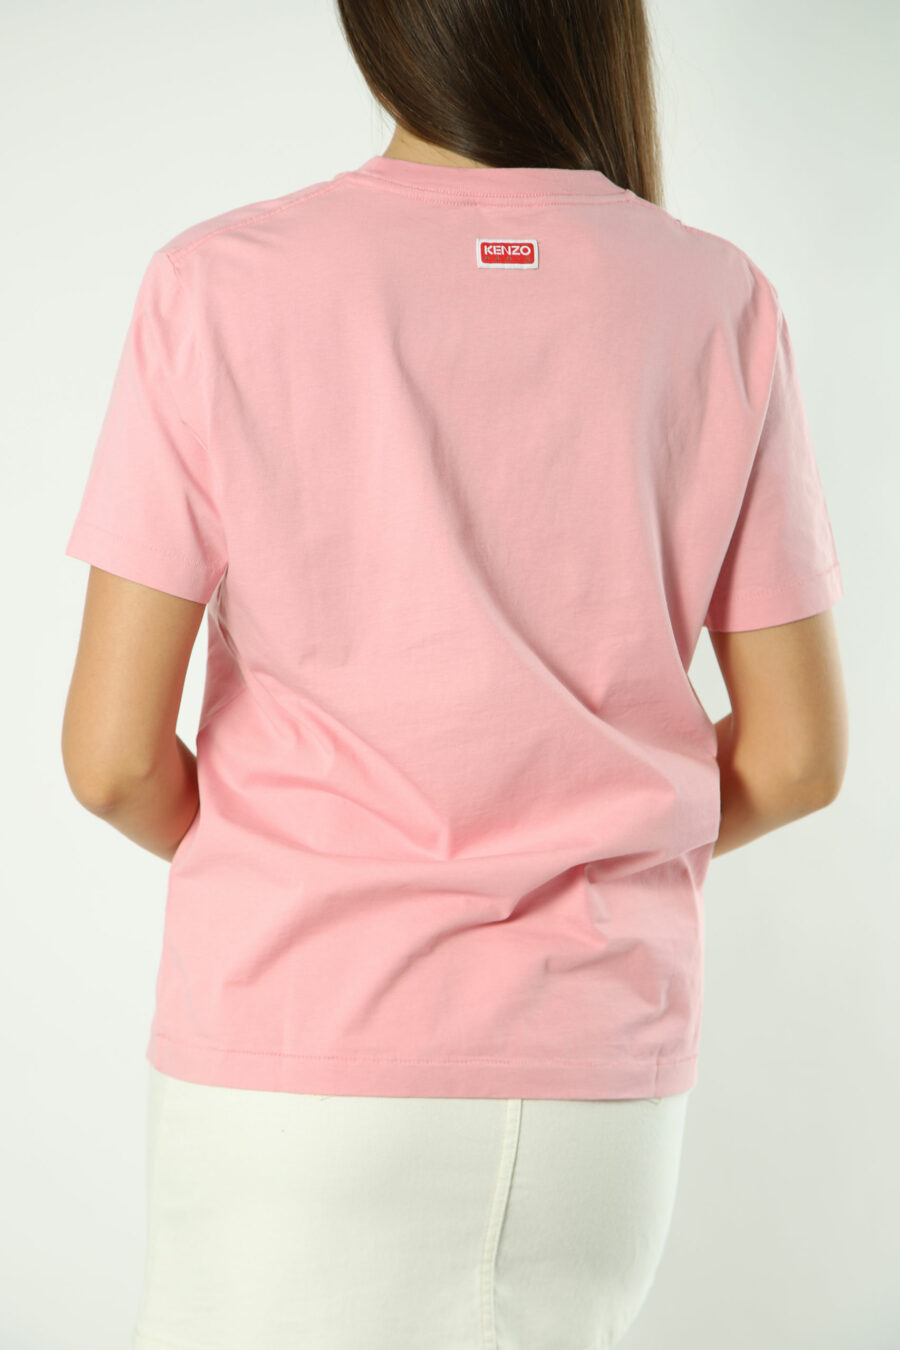 Camiseta rosa con maxilogo flor naranja - Photos 1404